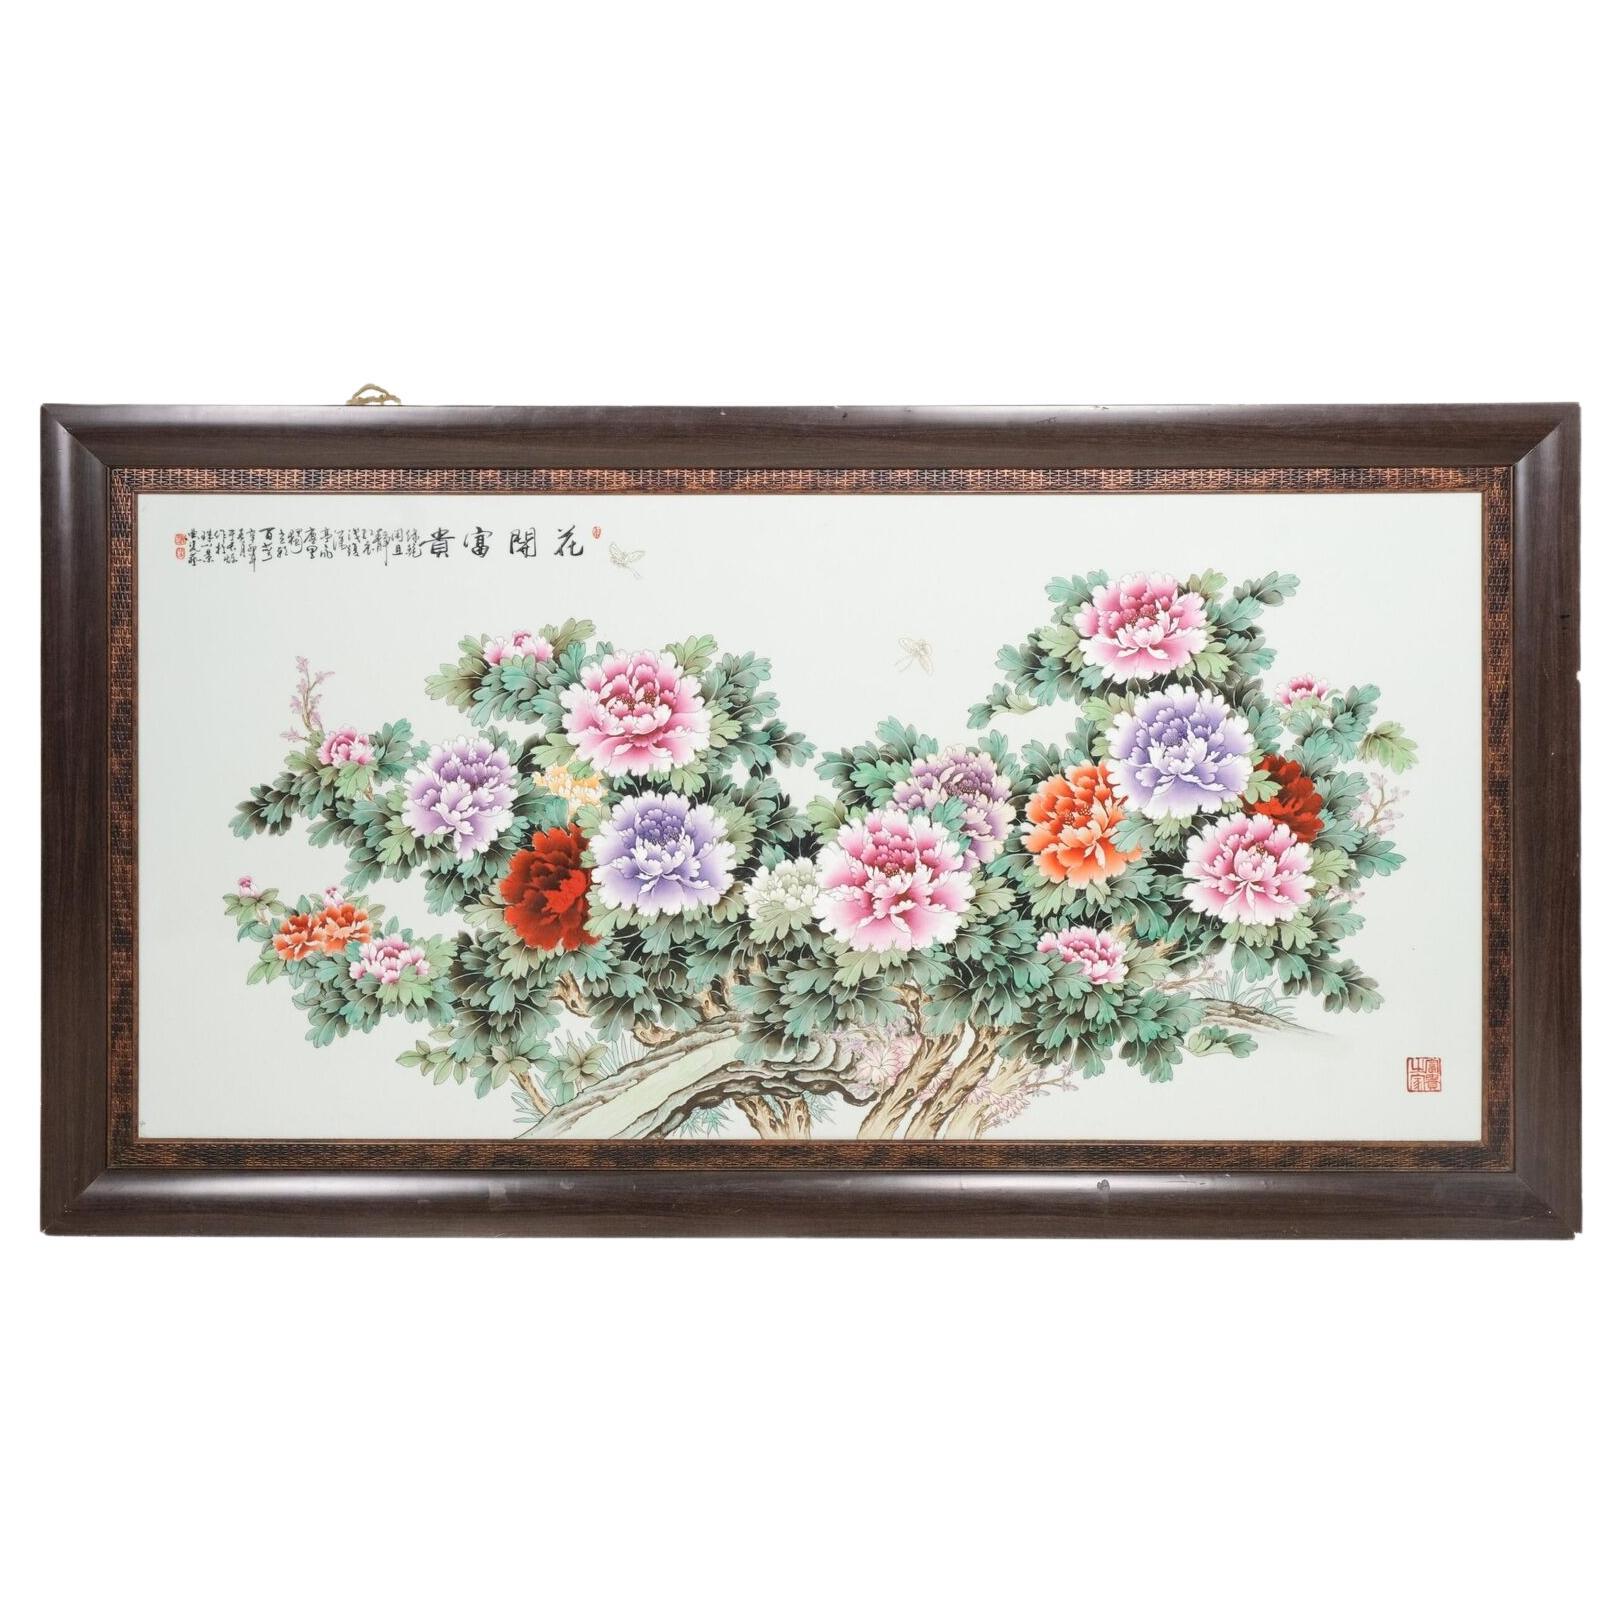 Große 2 Meter große chinesische Porzellanplakette mit Blumengemälde aus Porzellan Ca 1960 - 1980 Fenc